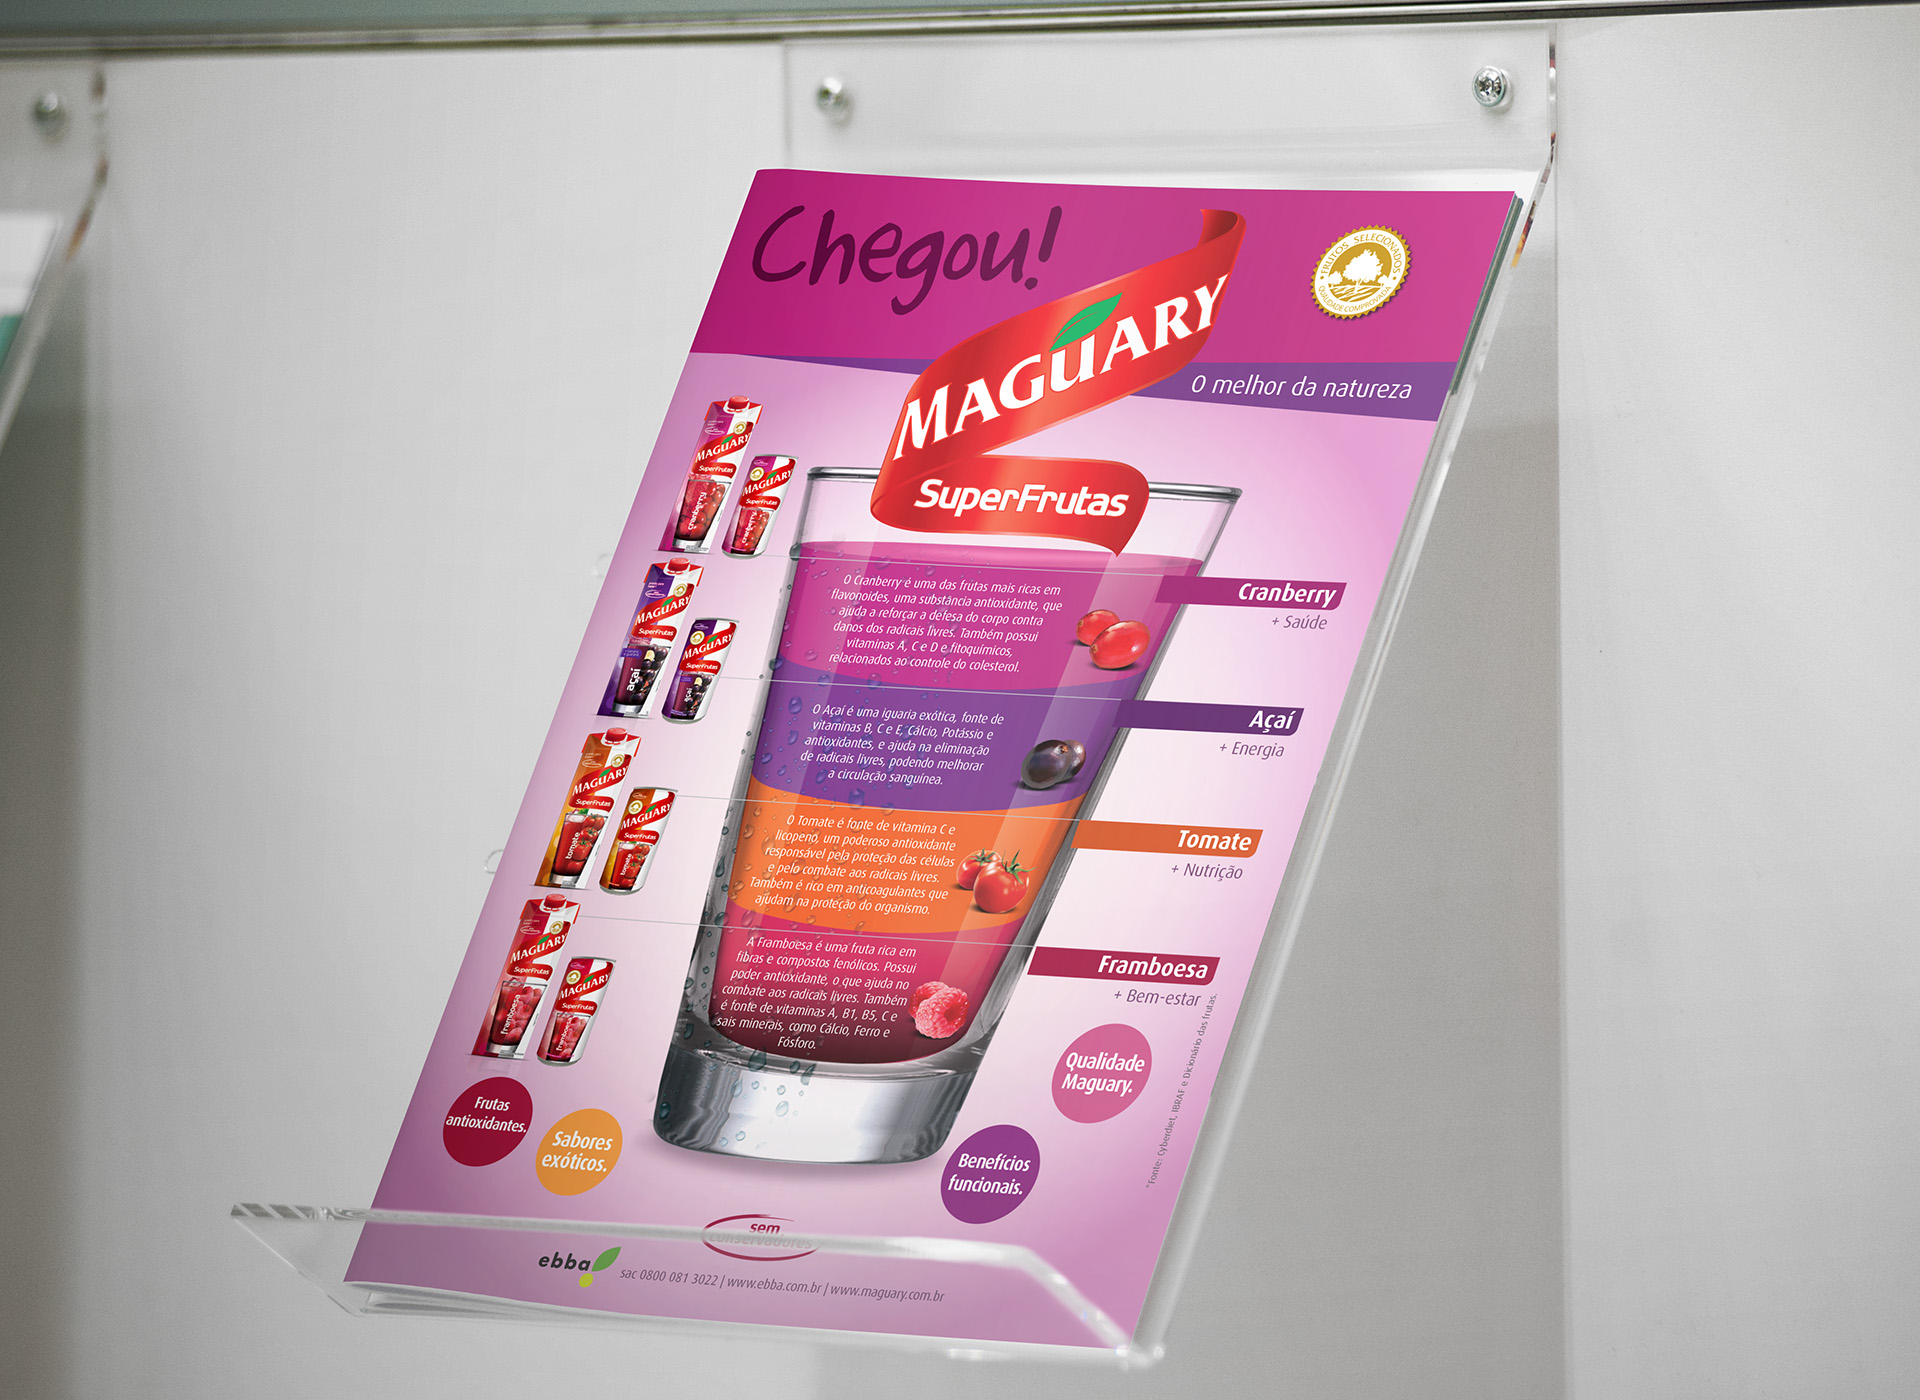 Imagem de folheto broadside com comunicação e key visual para lançamento de produtos SuperFrutas Maguary.